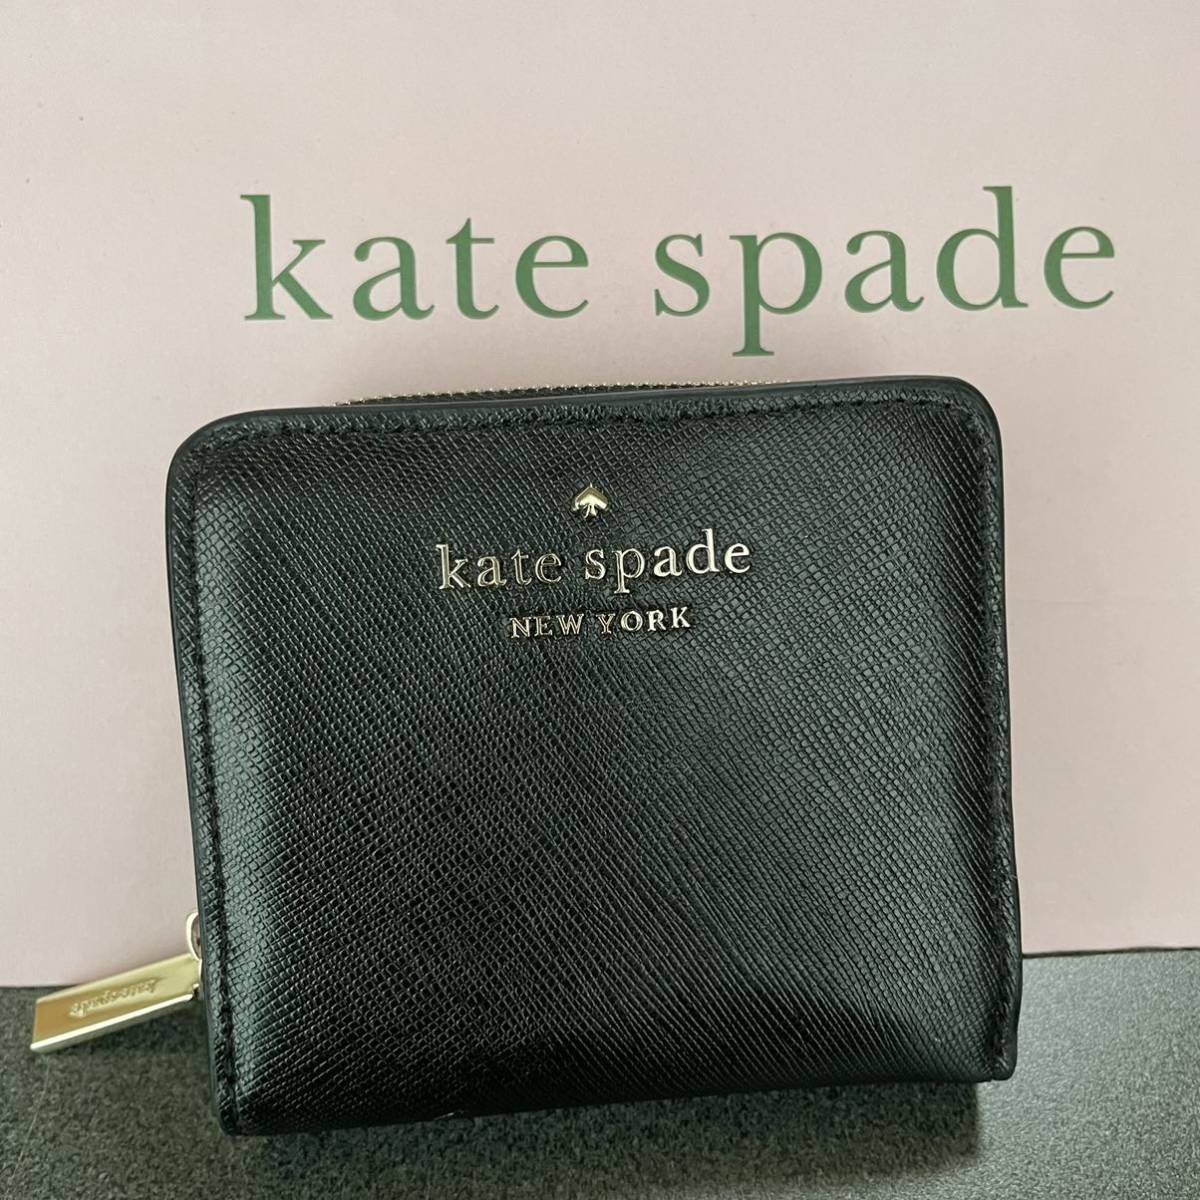 ケイトスペード Kate spade 財布 2つ折り財布 二つ折り財布 ラウンド